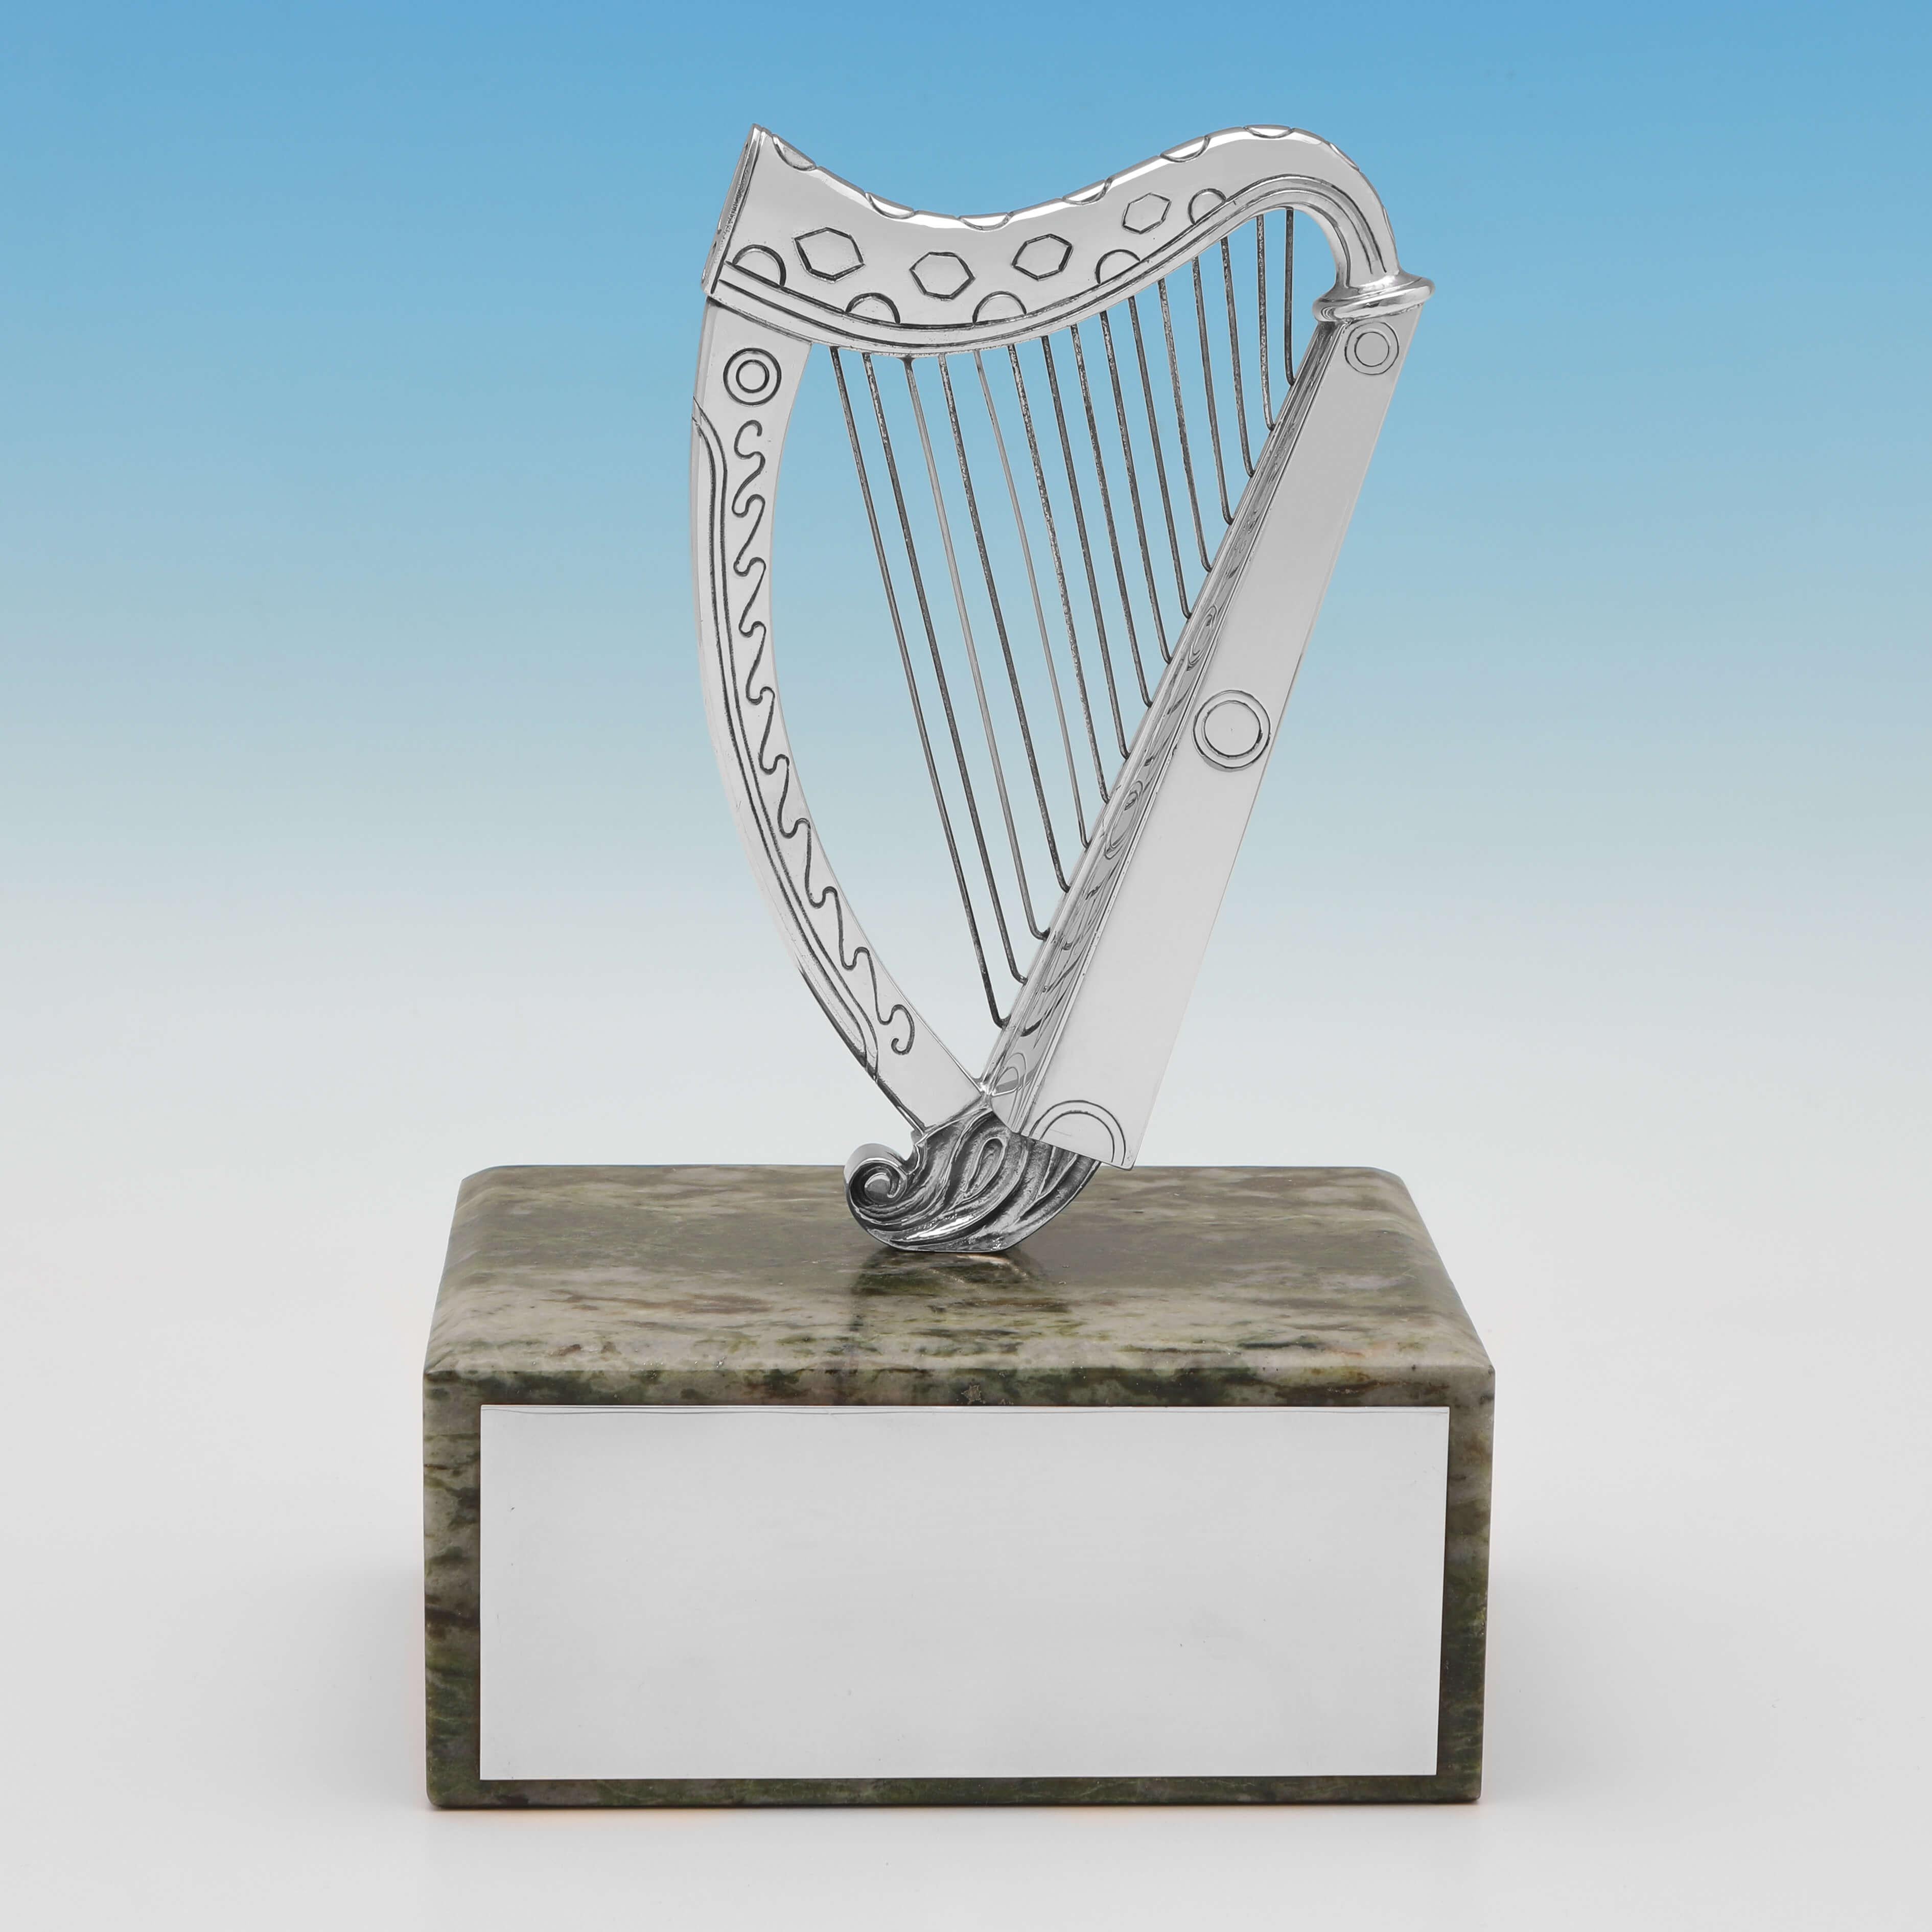 Poinçonné à Londres en 1970 par Barnards, ce charmant modèle de harpe en argent sterling est bien modelé et présenté sur une base en marbre vert avec une plaque en argent pour la gravure. La harpe est décorée d'un motif géométrique gravé. 

Il